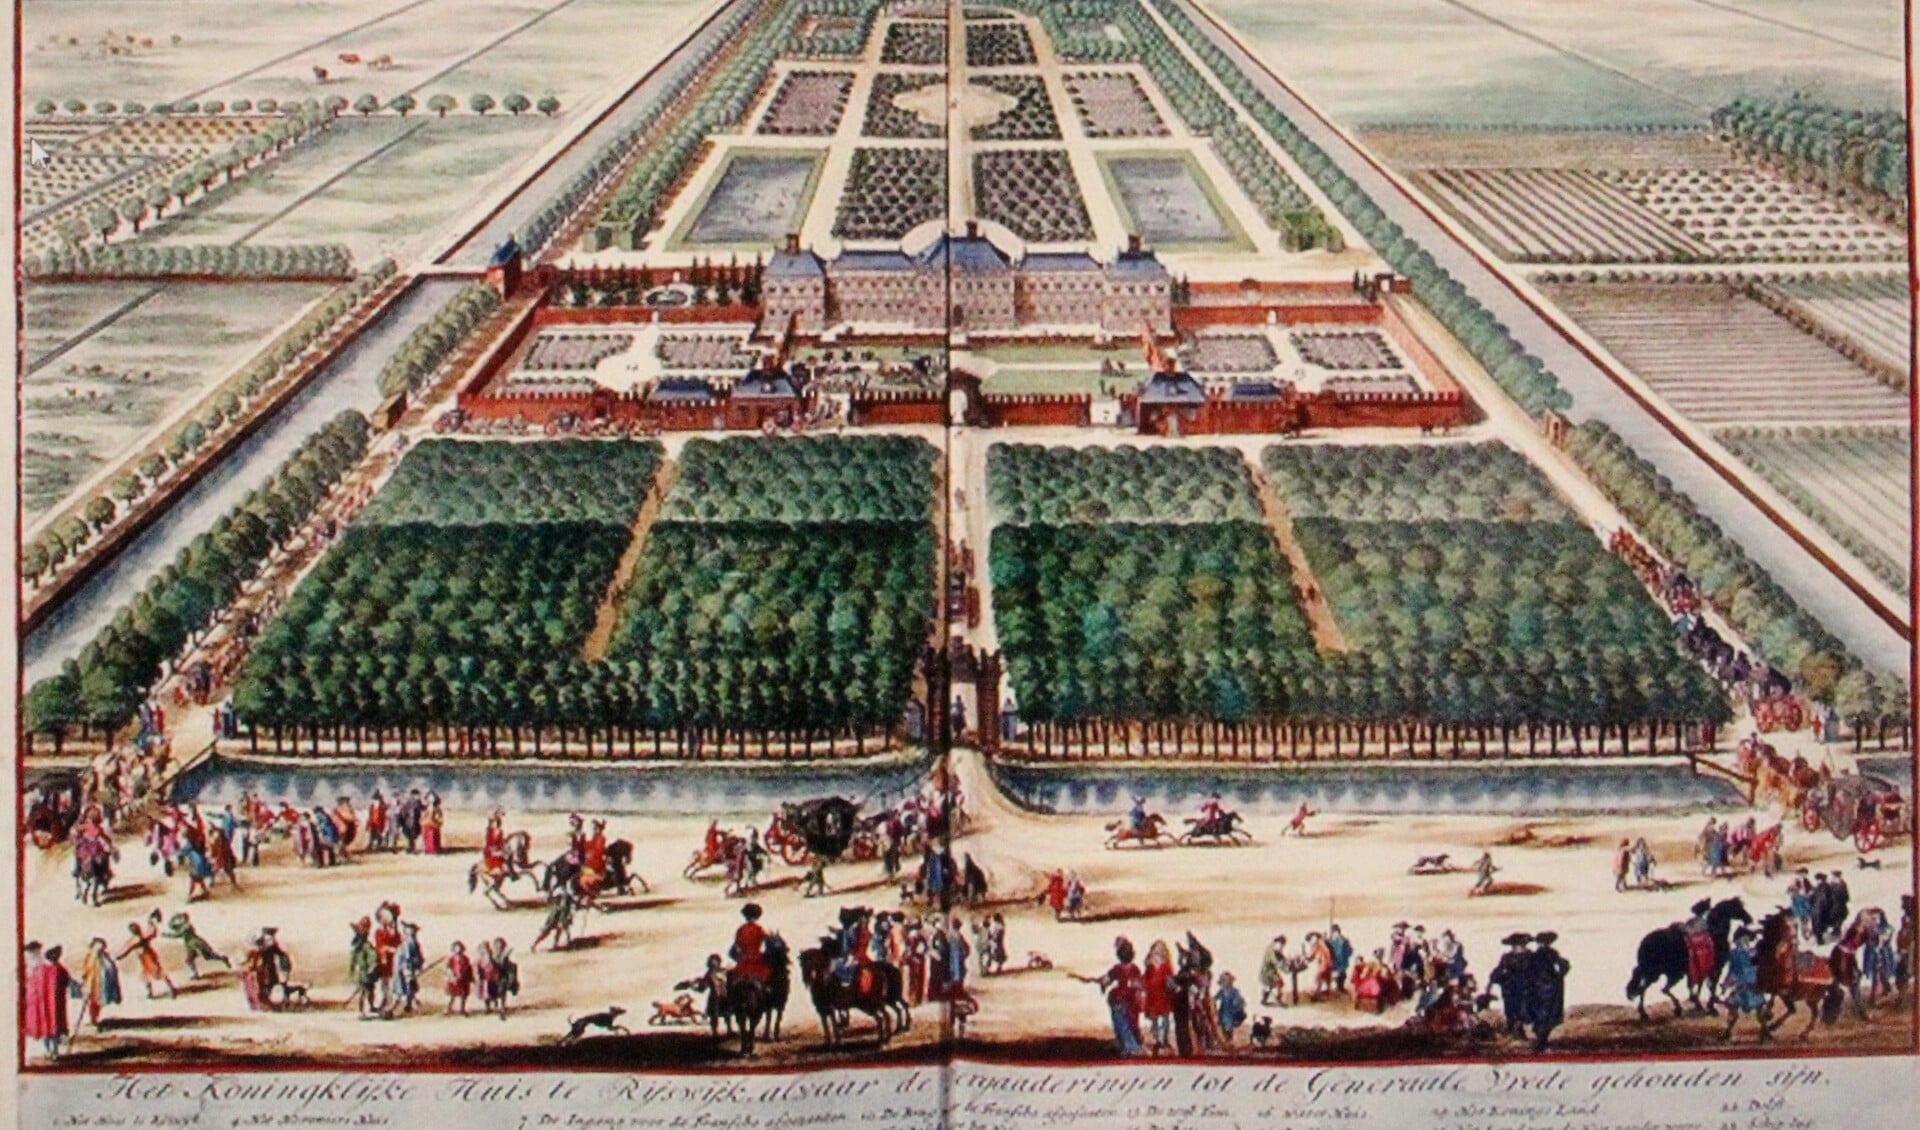 Het Huis ter Nieuburch. De Fransen kregen de westelijke vleugel van het paleis tot hun beschikking. De bondgenoten van de coalitie werden in de oostelijke vleugel ondergebracht.